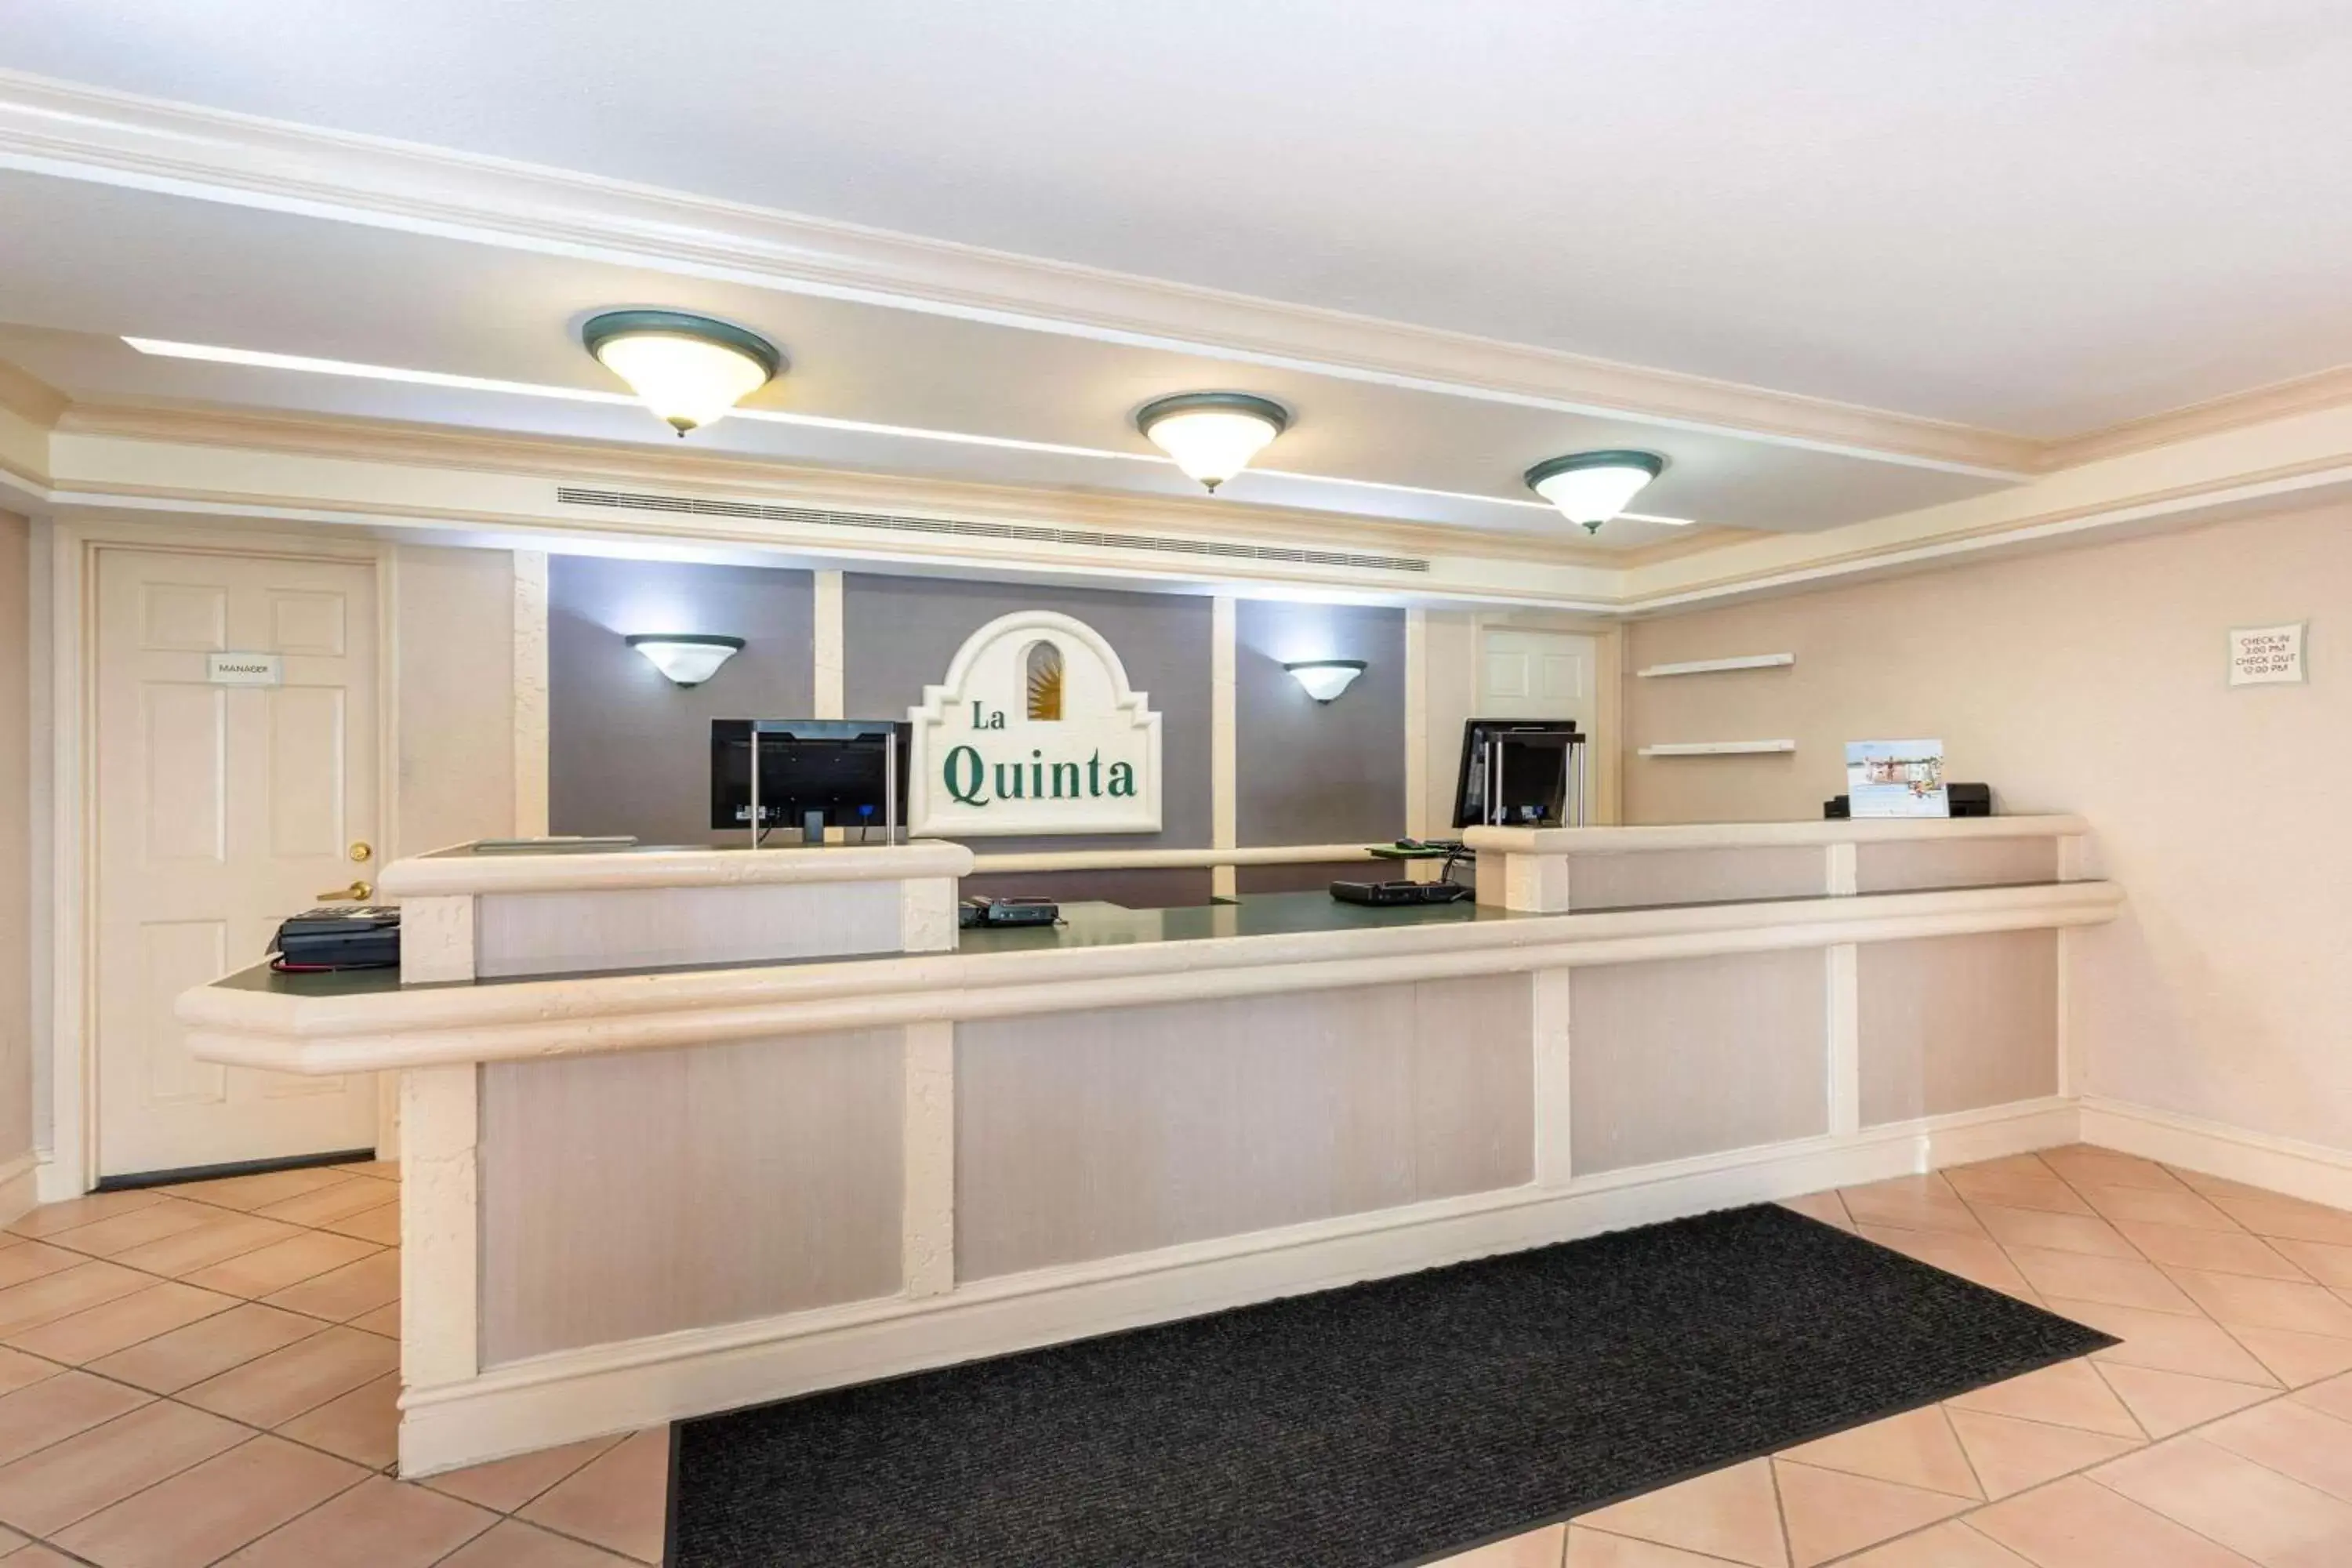 Lobby or reception, Lobby/Reception in La Quinta Inn by Wyndham Tallahassee North